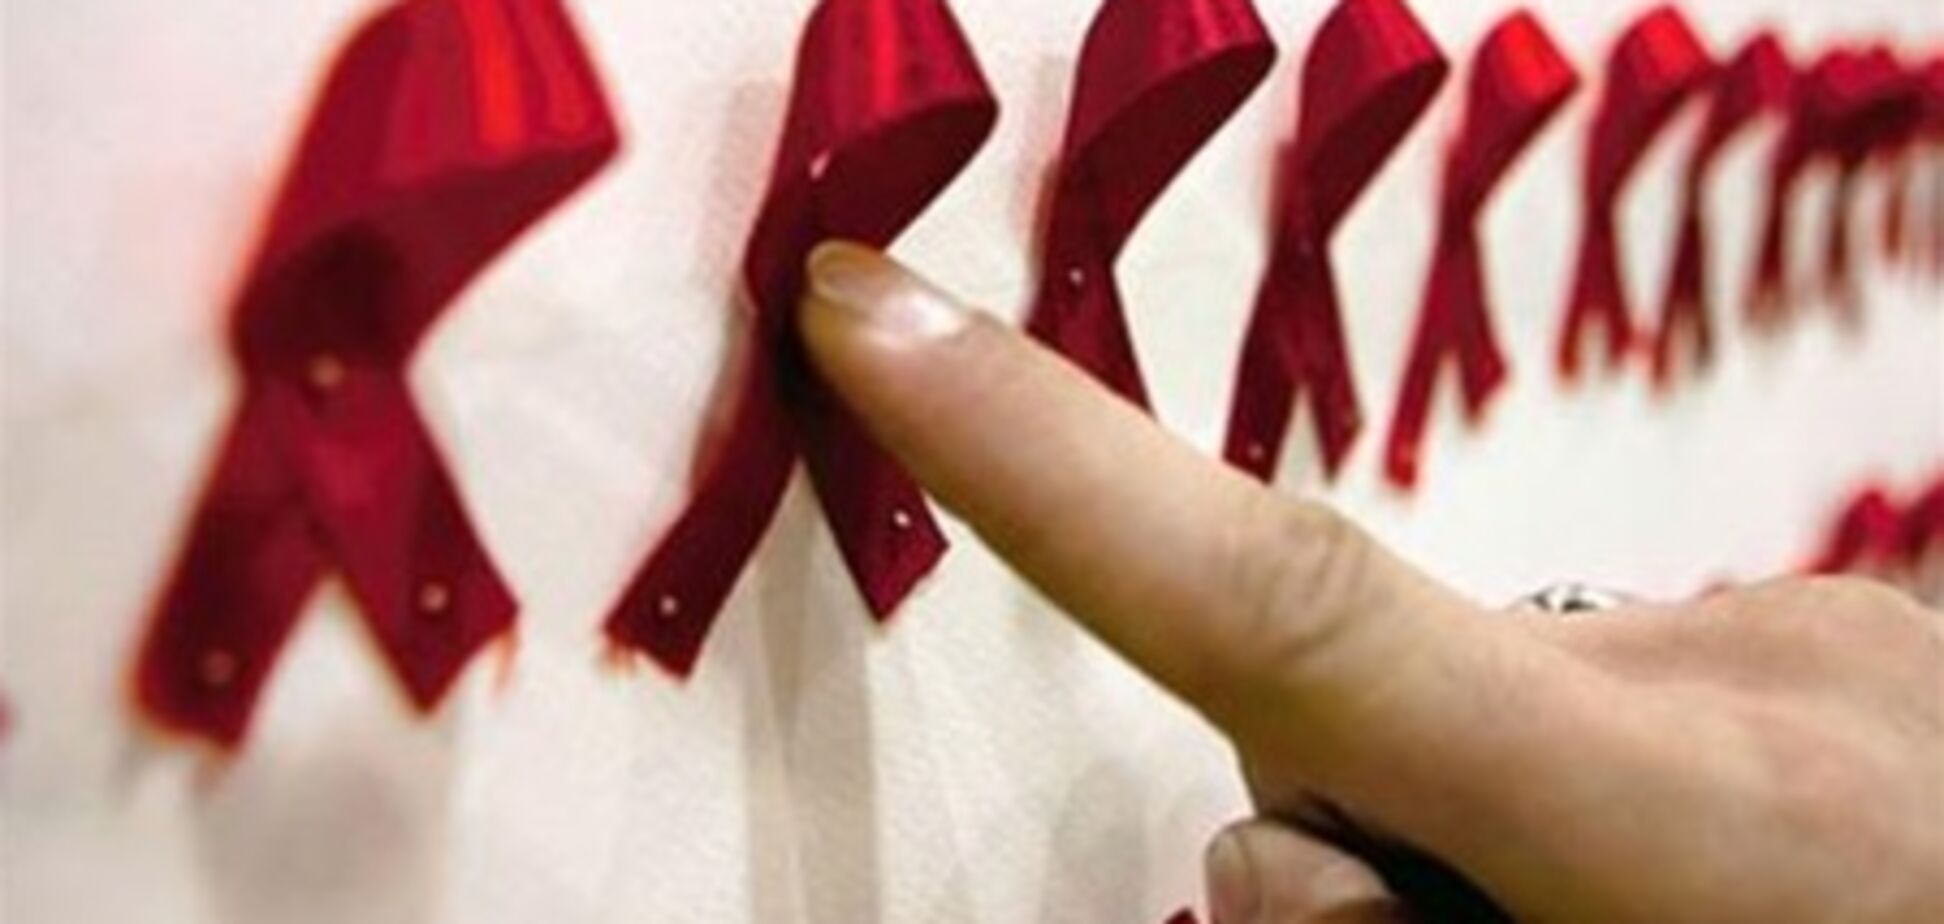 Каждая десятая ВИЧ-инфекция в мире от инъекционных наркотиков